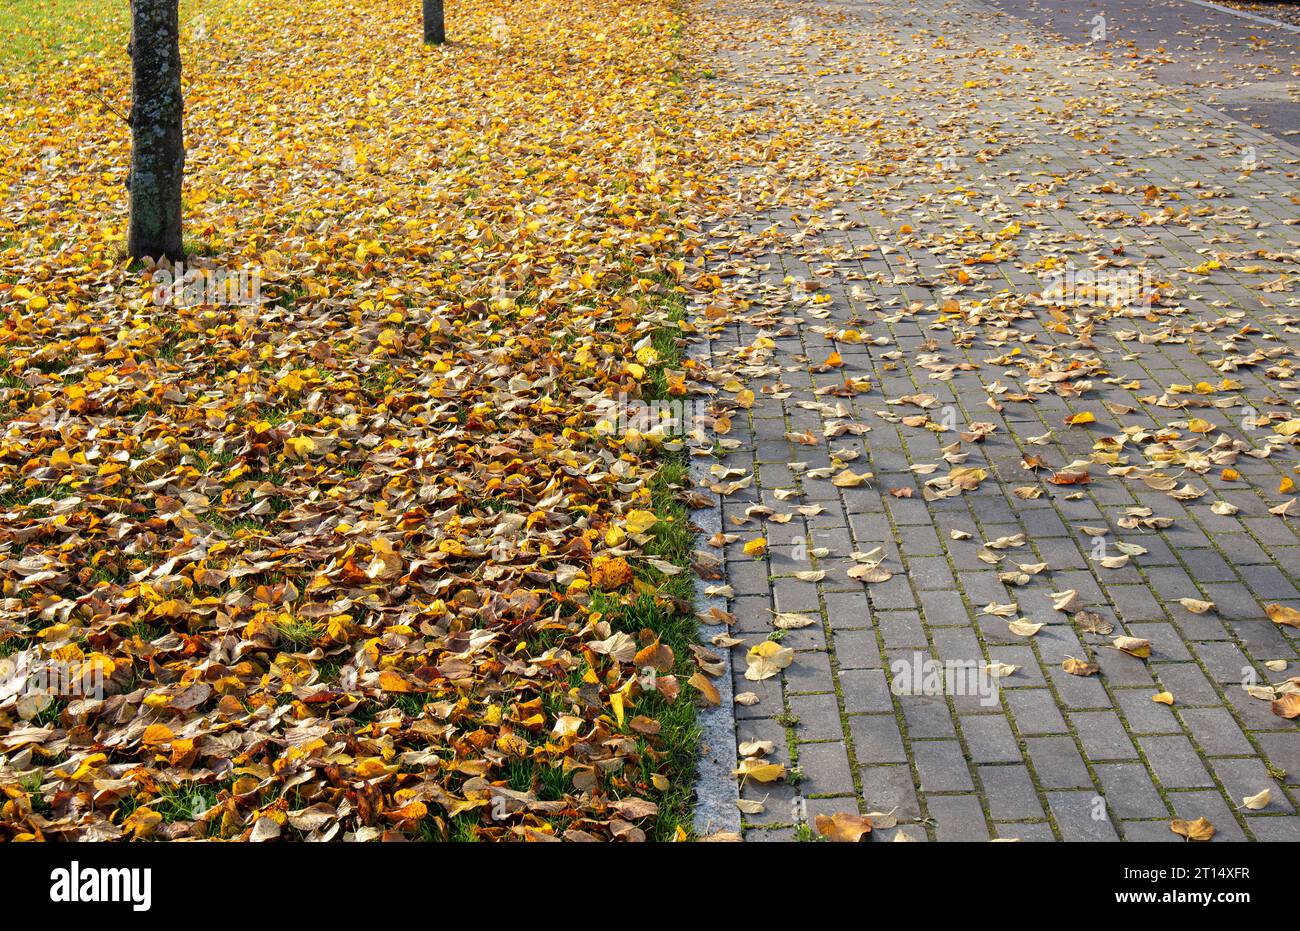 Passerelle couverte de belles feuilles jaunes d'automne sur la rue en briques de pierre. Journée d'automne ensoleillée à l'extérieur. Banque D'Images